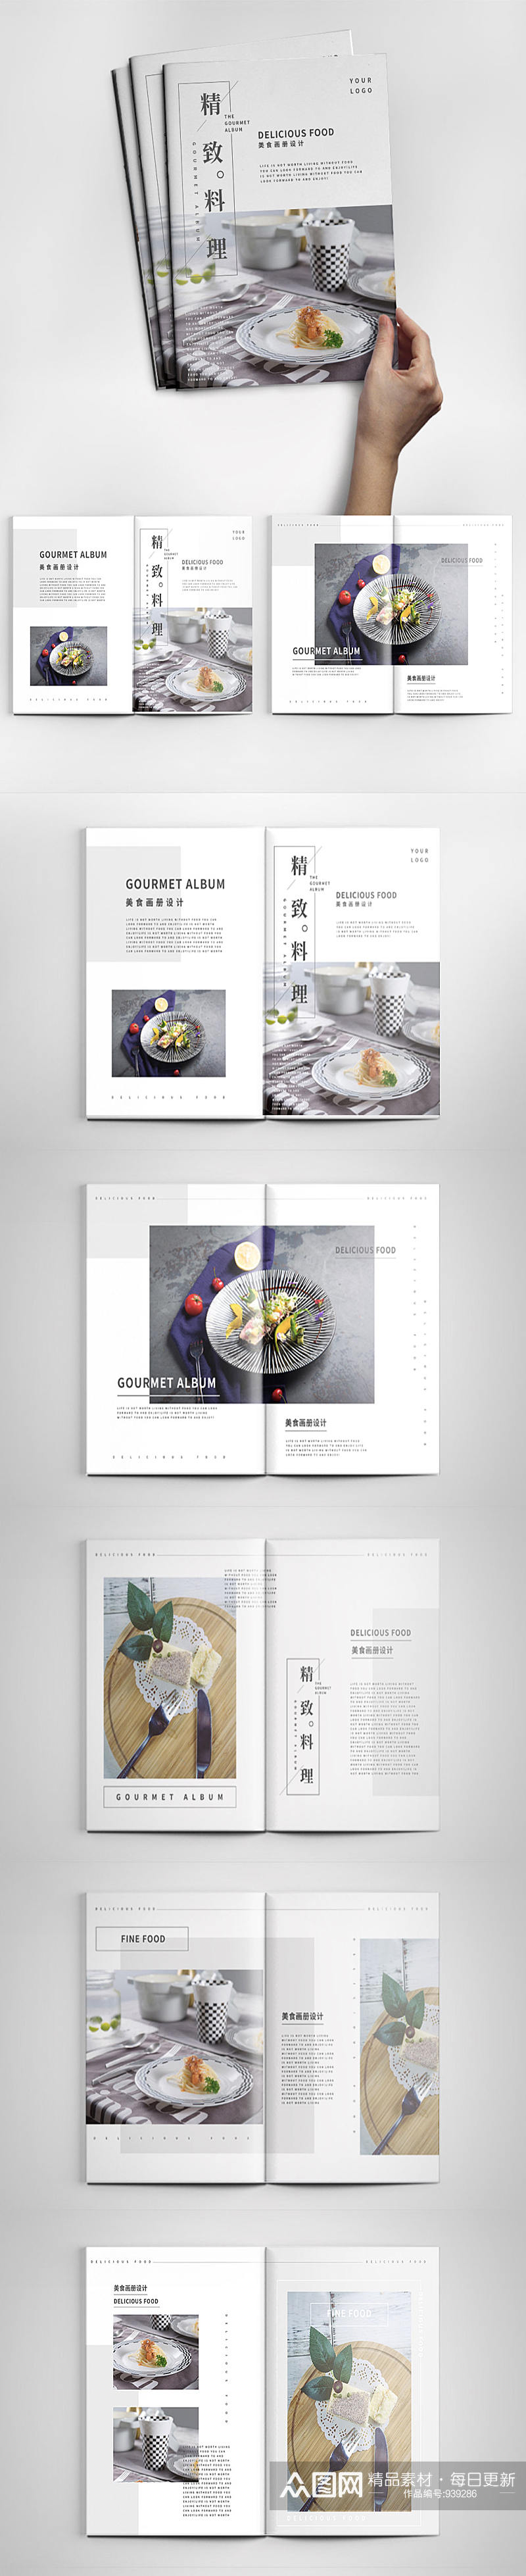 美食画册设计日式韩式料理西餐画册素材